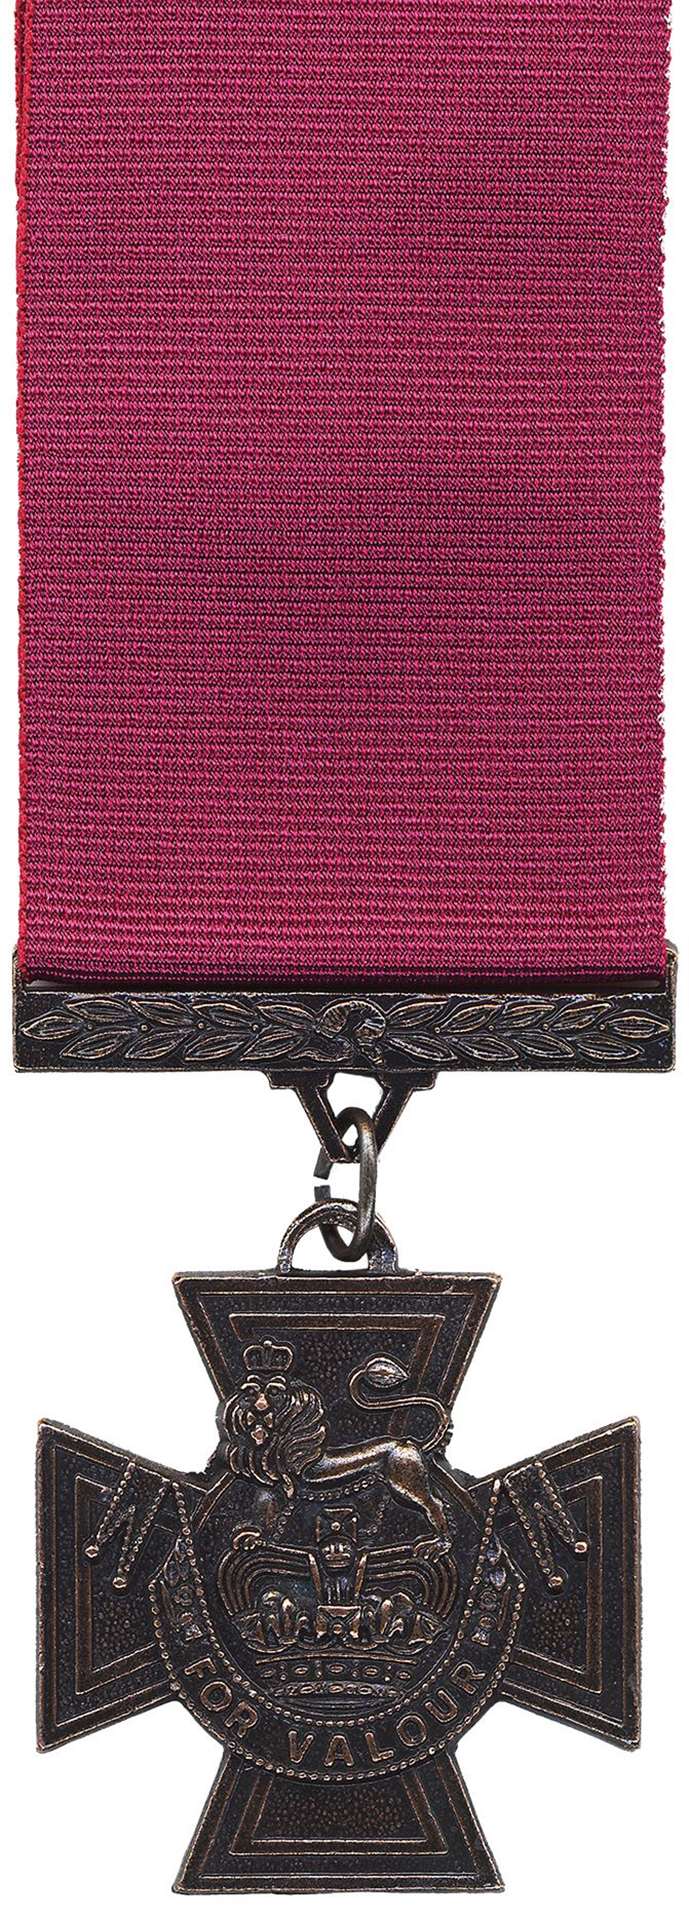 A British Victoria Cross with a crimson ribbon